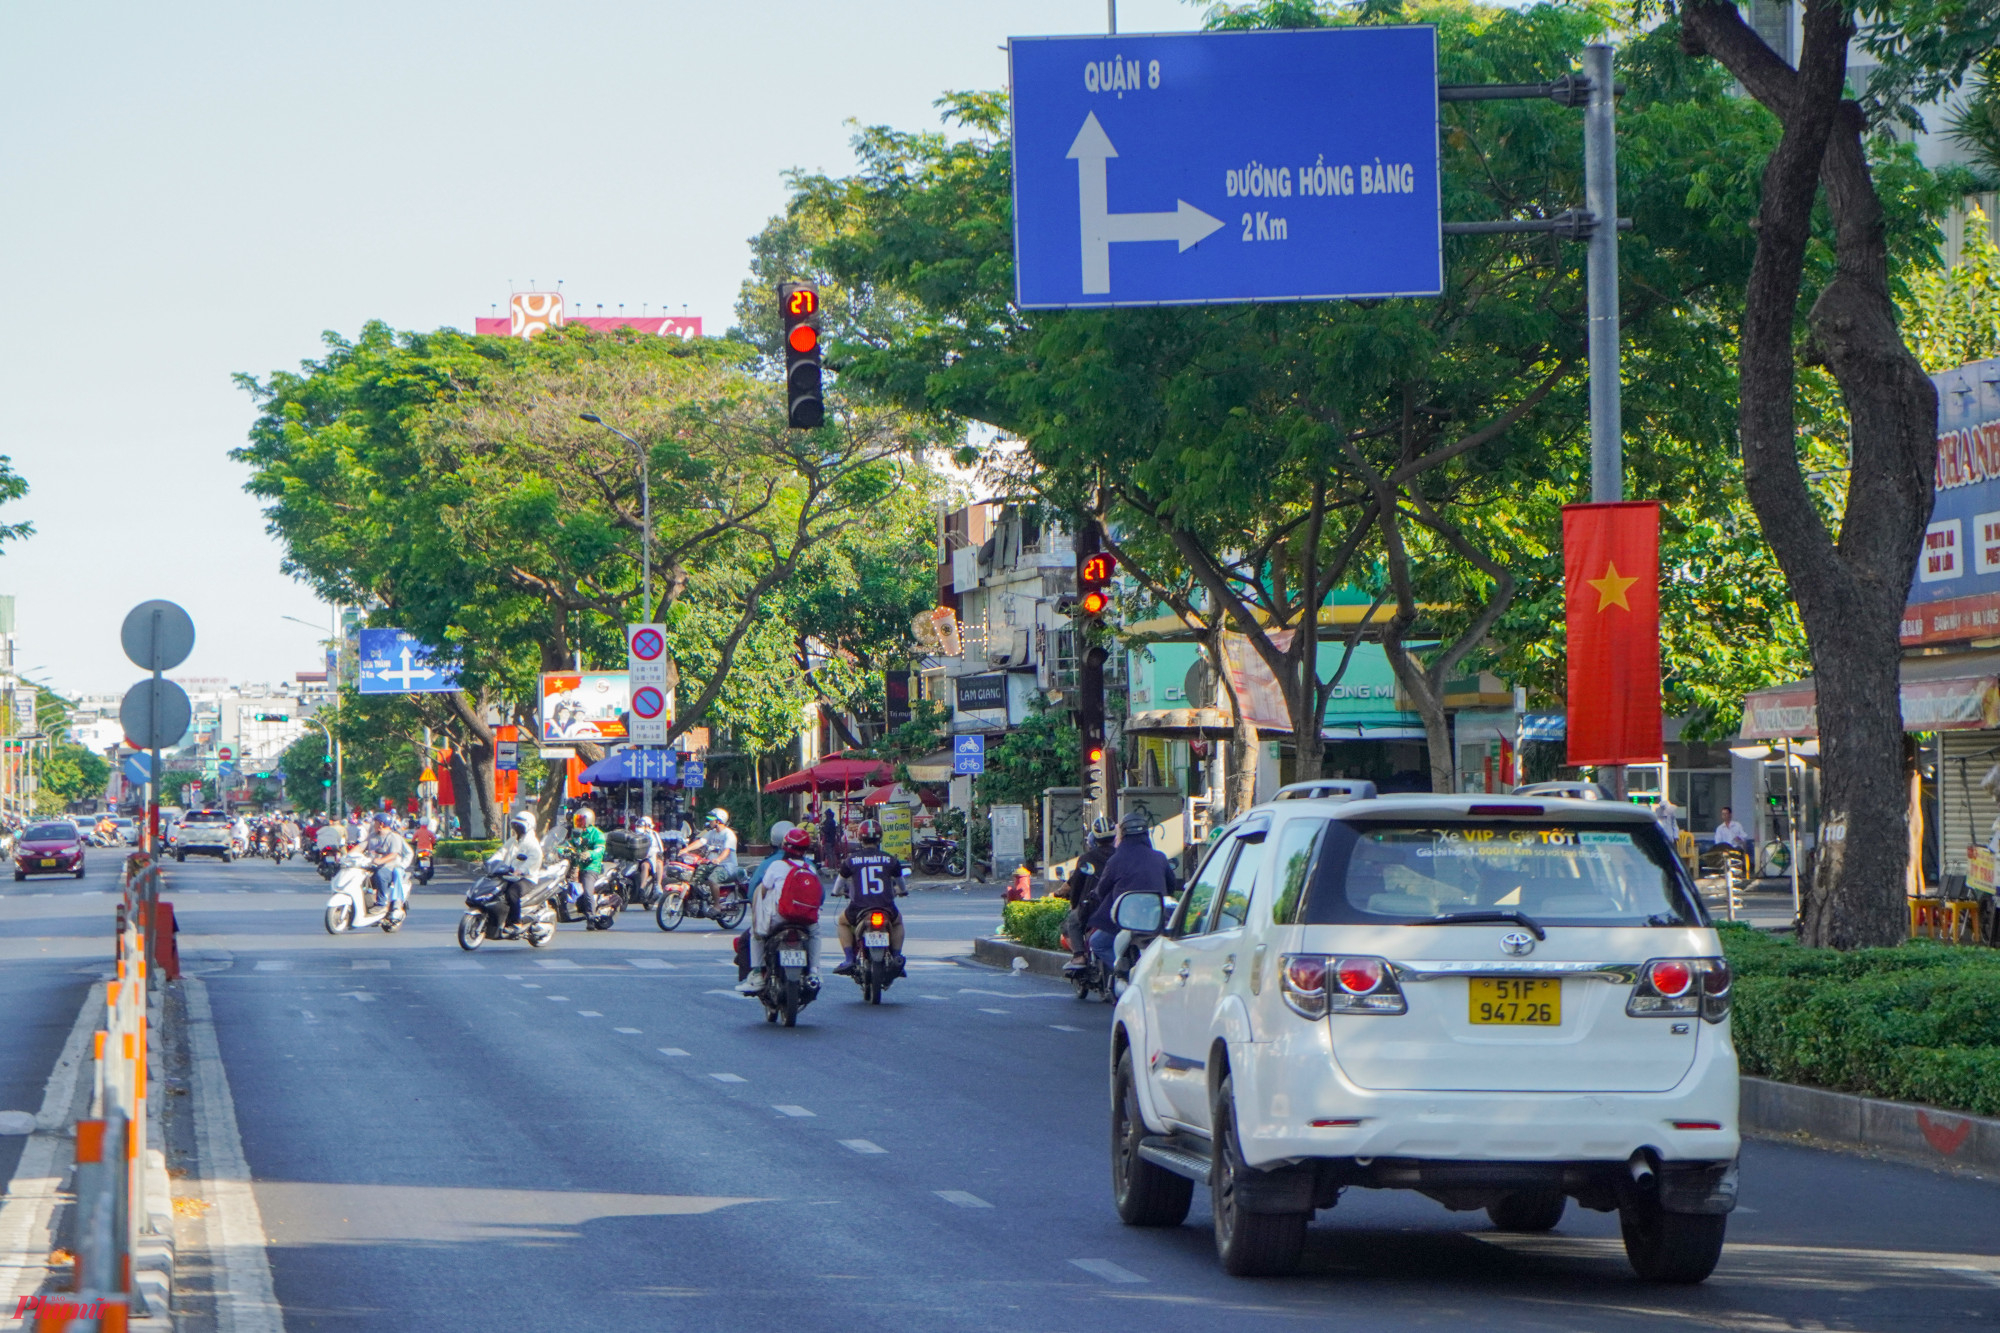 Ghi nhận tại tuyến đường Nguyễn Văn Cừ (quận 5), nhiều lá cờ được treo dọc hai bên đường trải dài từ khu vực Vòng xoay Ngã 6 Cộng Hòa đến ngã tư Trần Hưng Đạo.